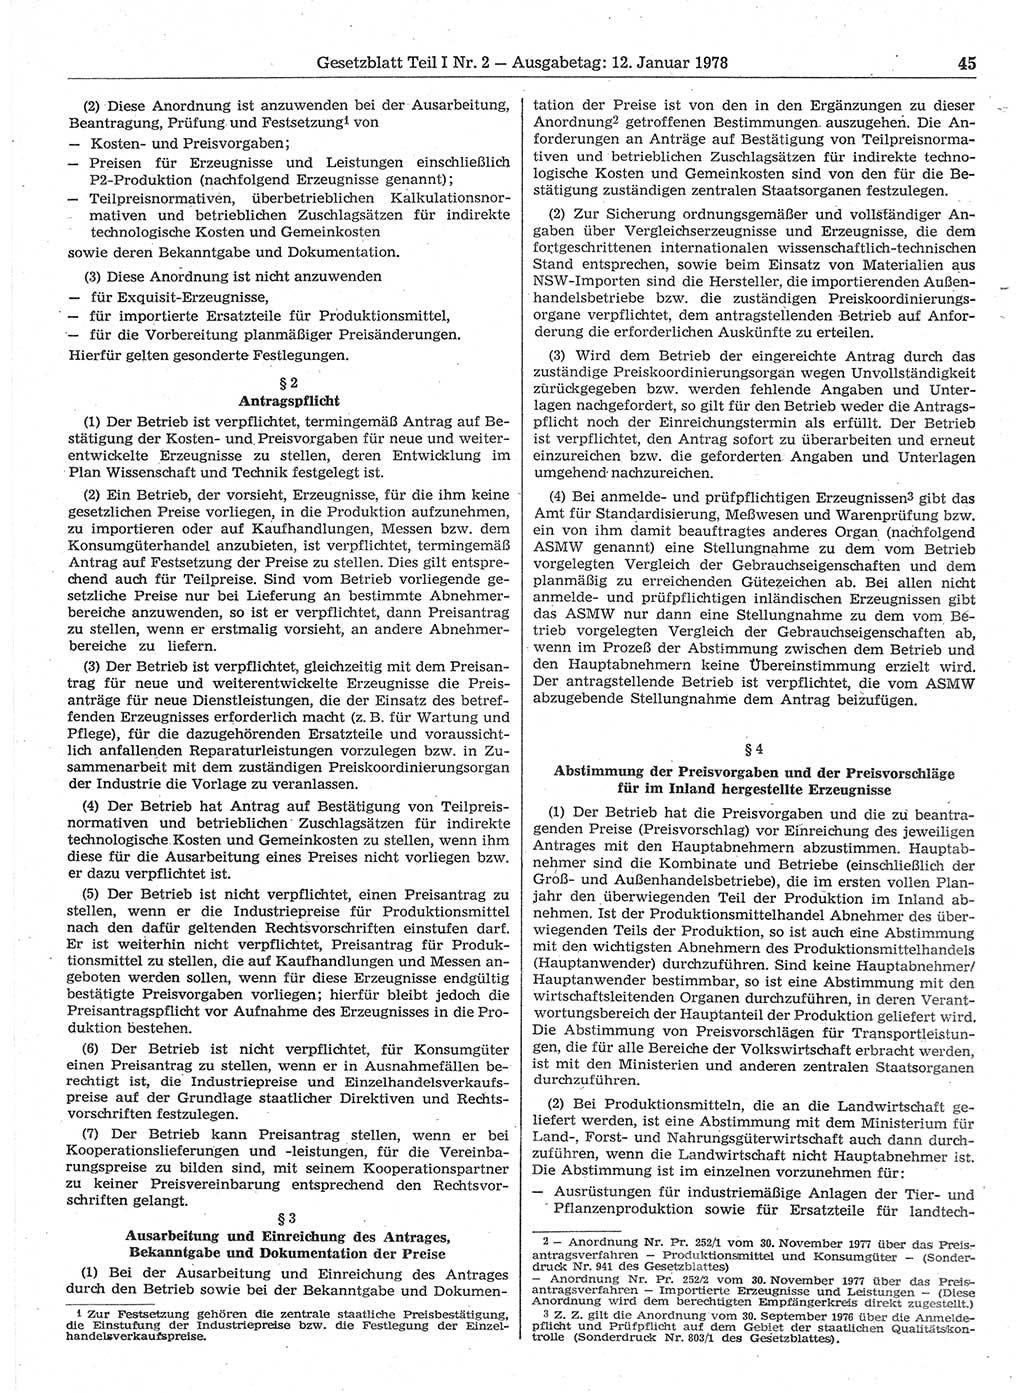 Gesetzblatt (GBl.) der Deutschen Demokratischen Republik (DDR) Teil Ⅰ 1978, Seite 45 (GBl. DDR Ⅰ 1978, S. 45)